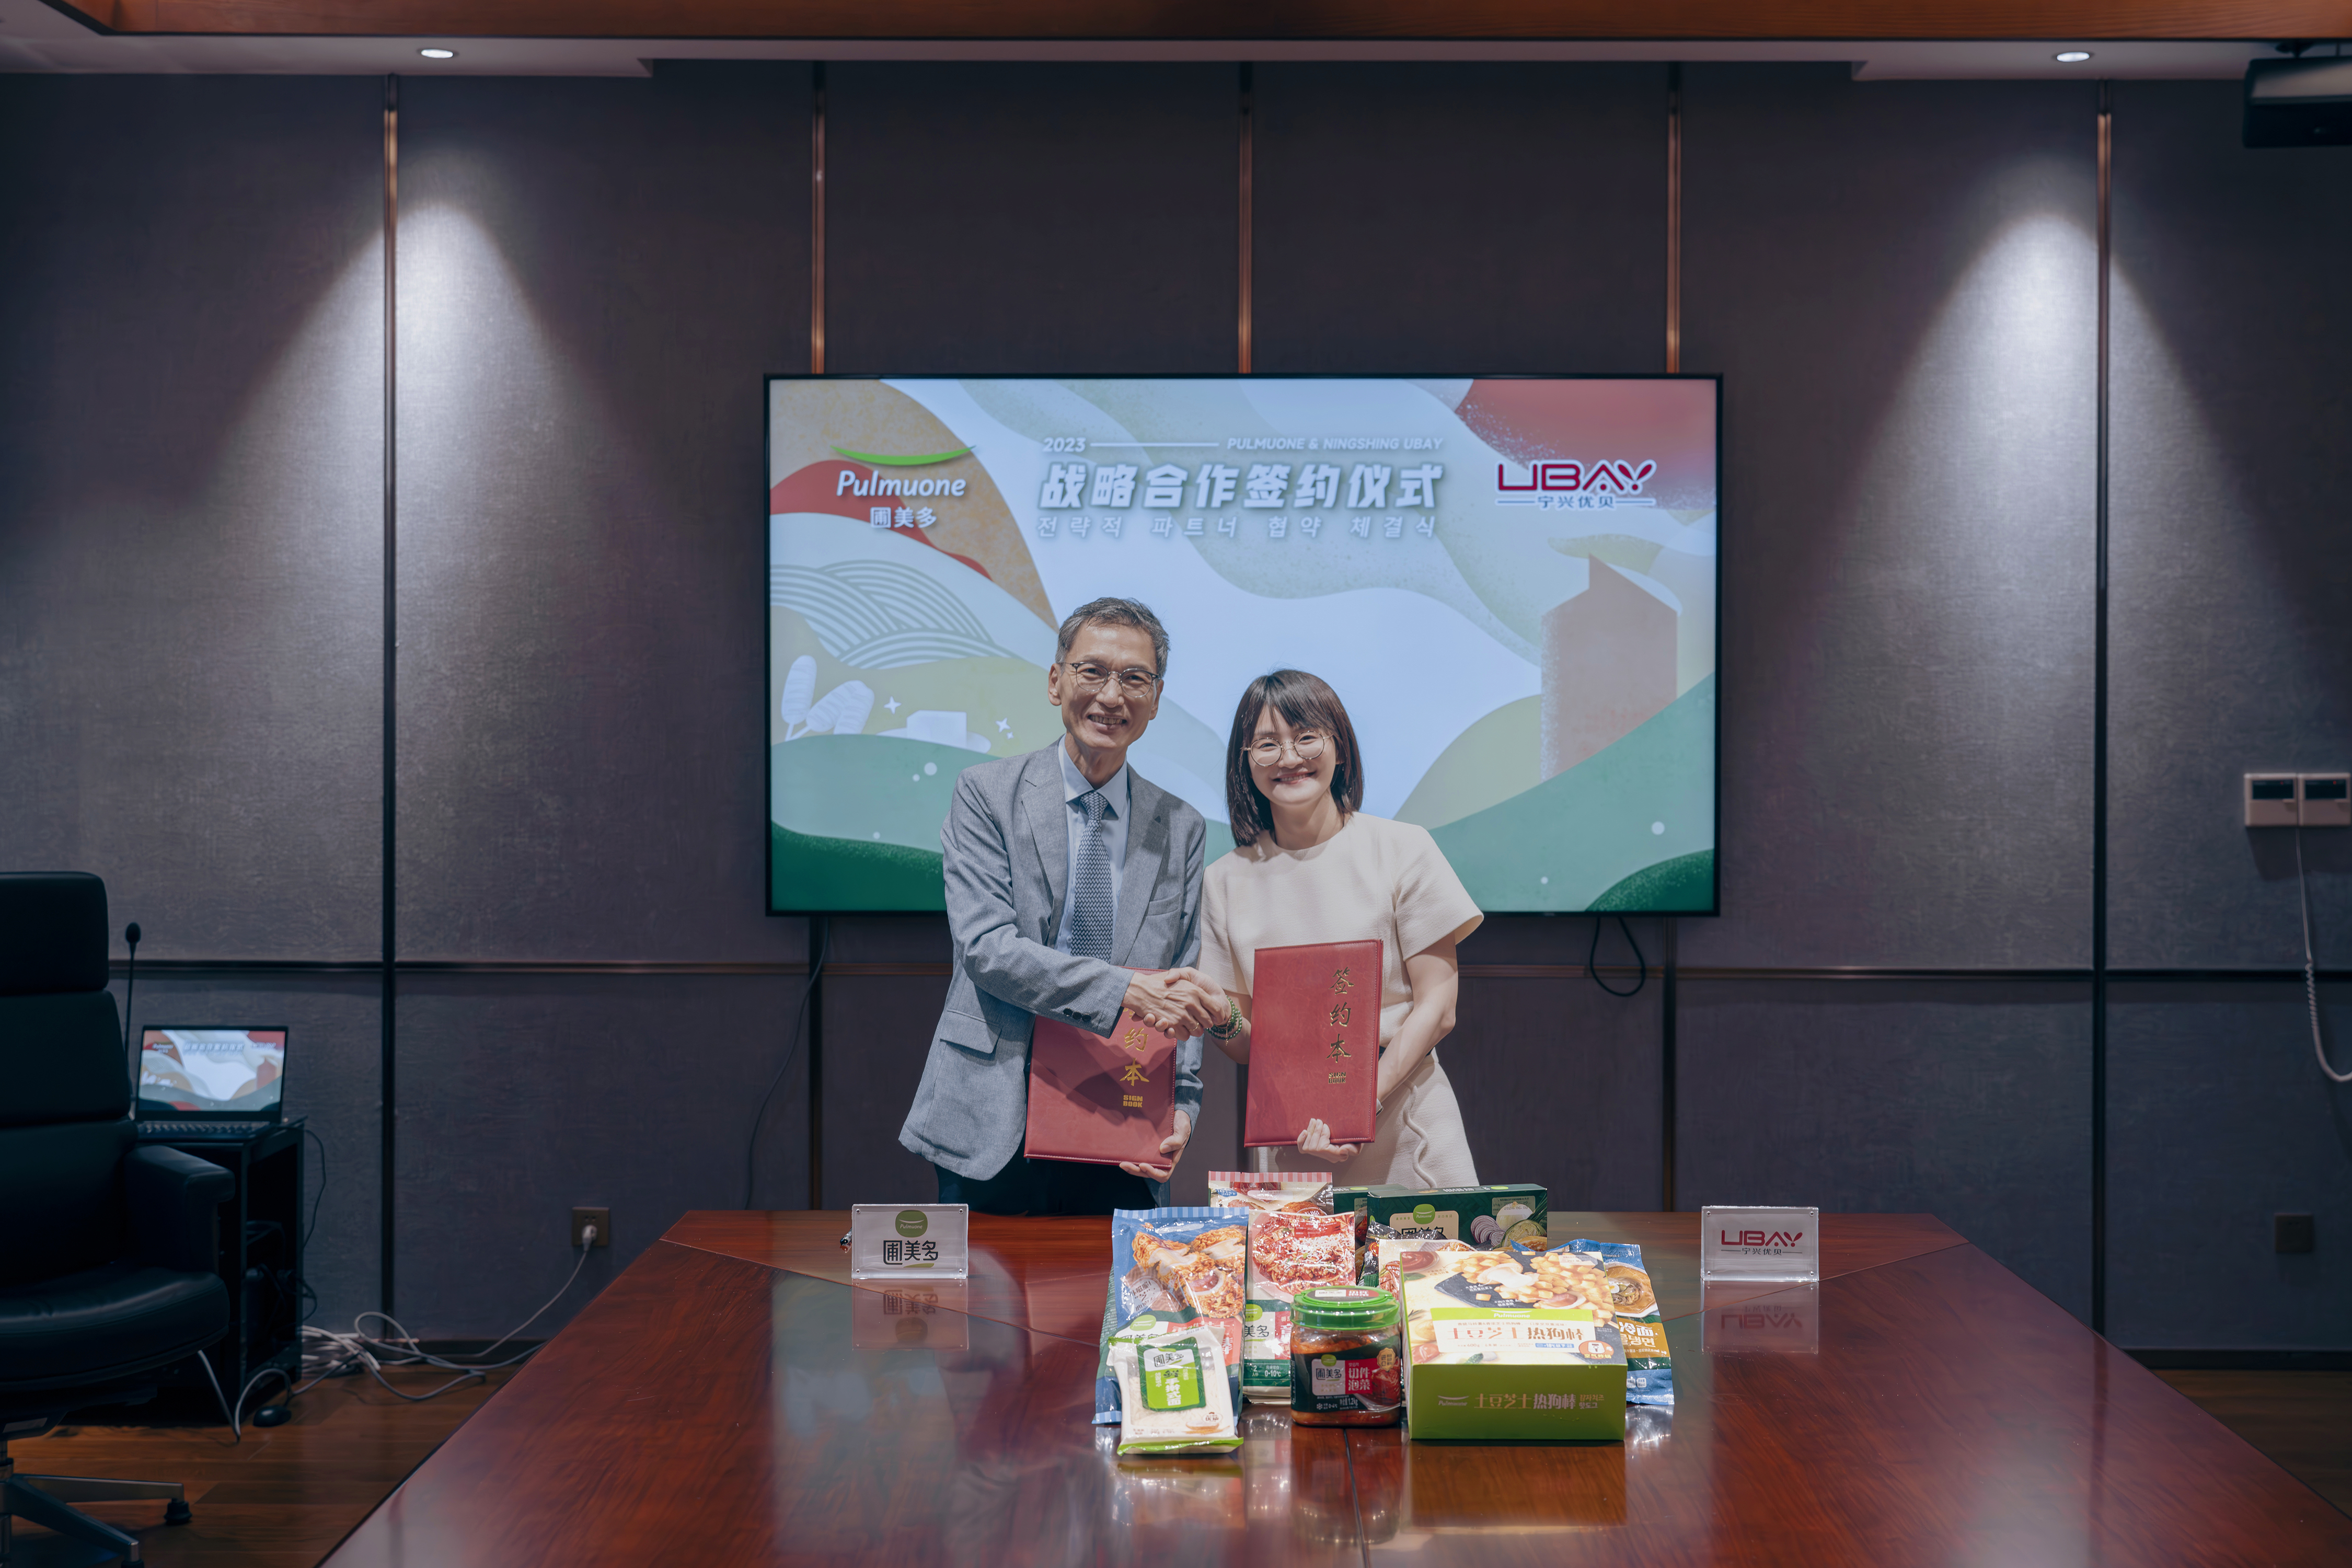 Ningshing Ubay and Korean Pulmuone Forge Strategic Partnership